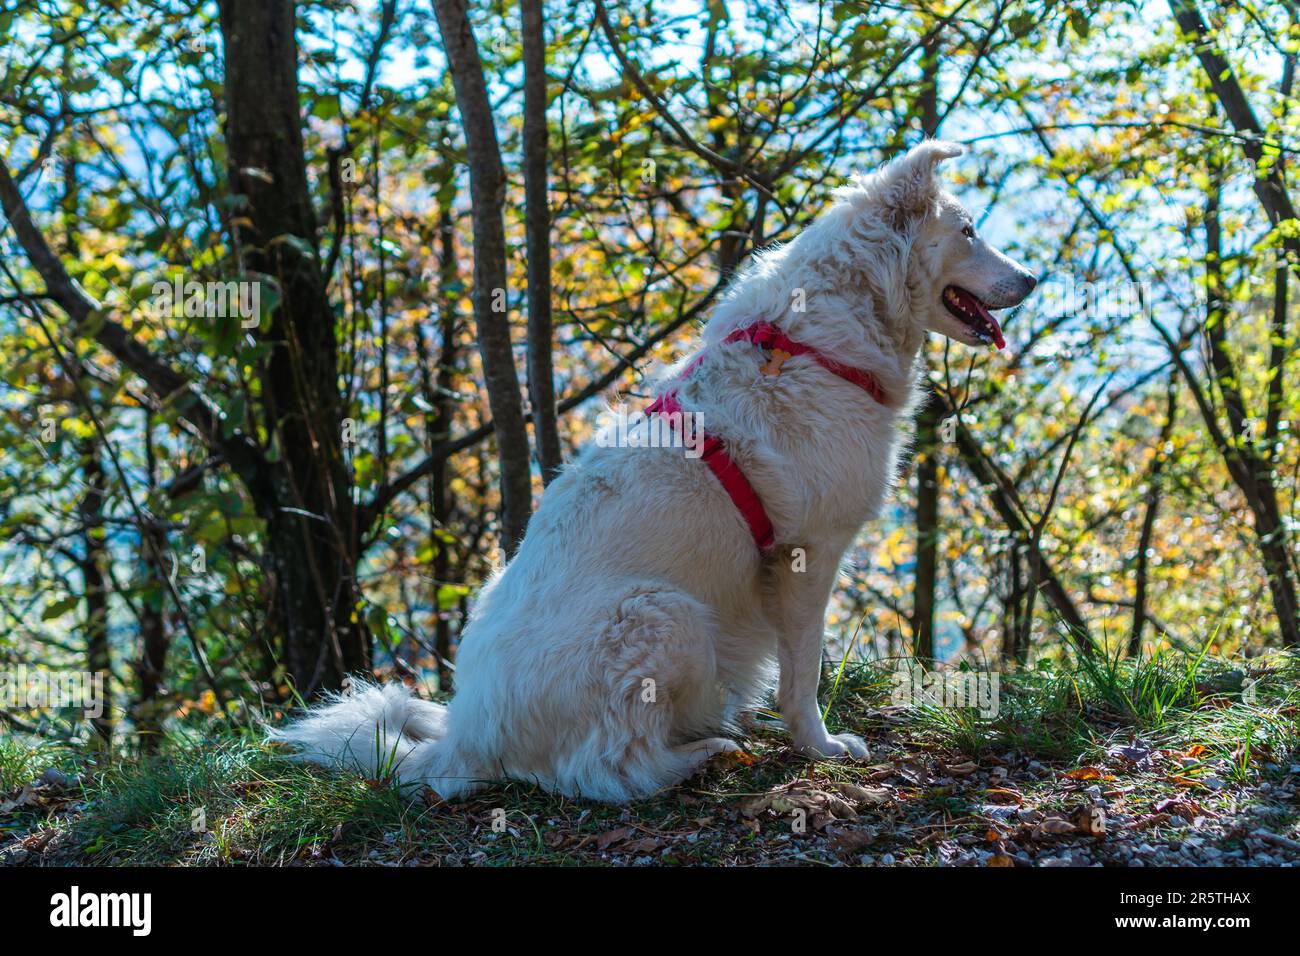 Un adorabile cane bianco che indossa un'imbracatura rossa è raffigurato in primo piano nell'immagine Foto Stock